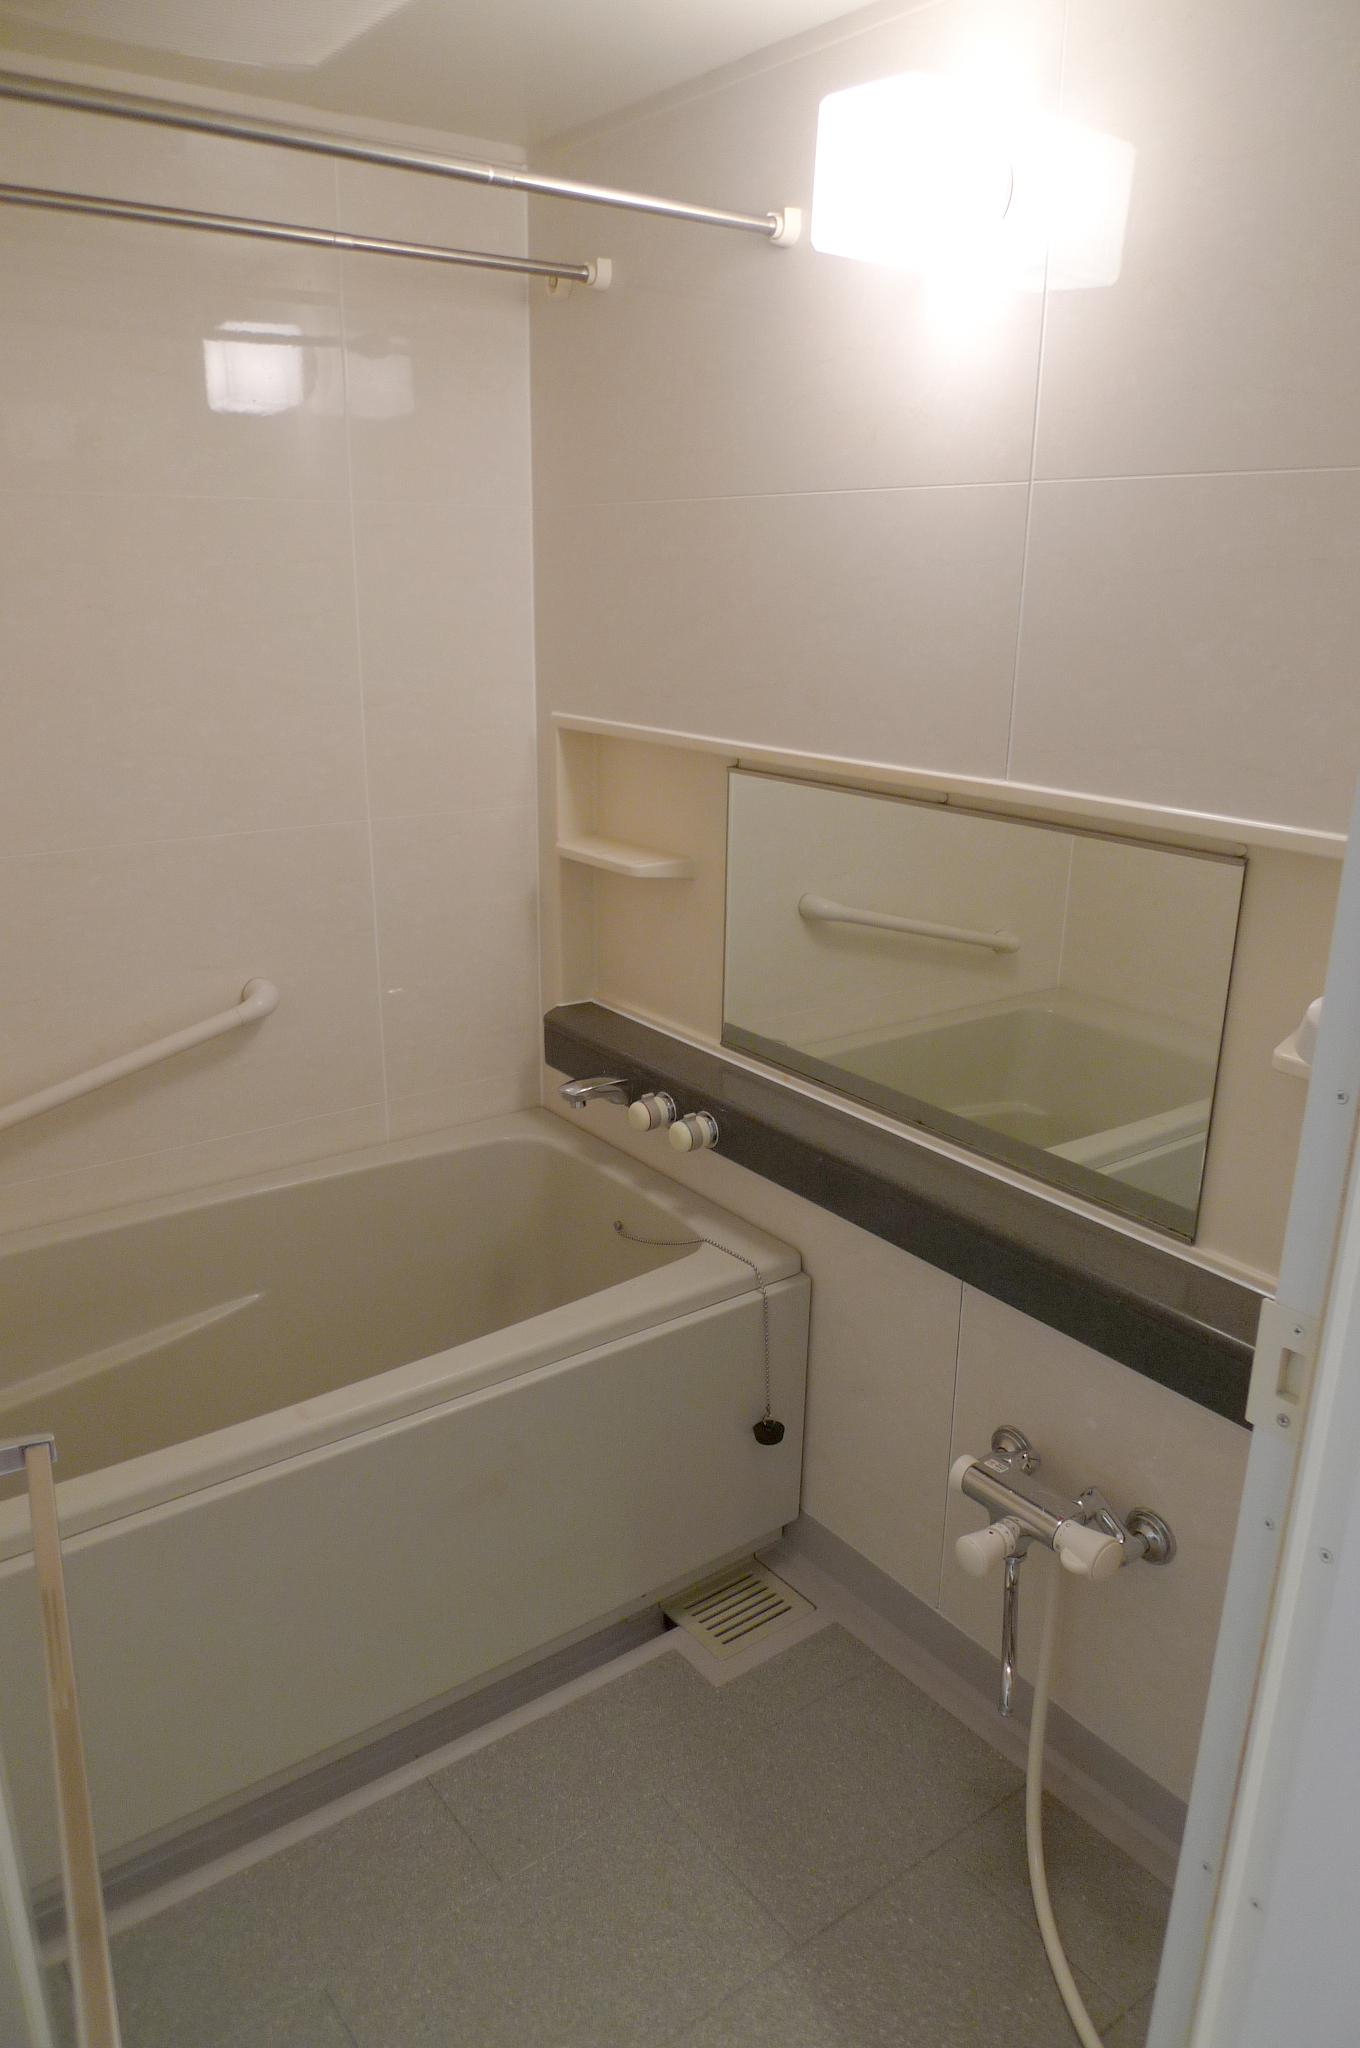 Bath. Bathroom heating ・ ventilation ・ With dryer